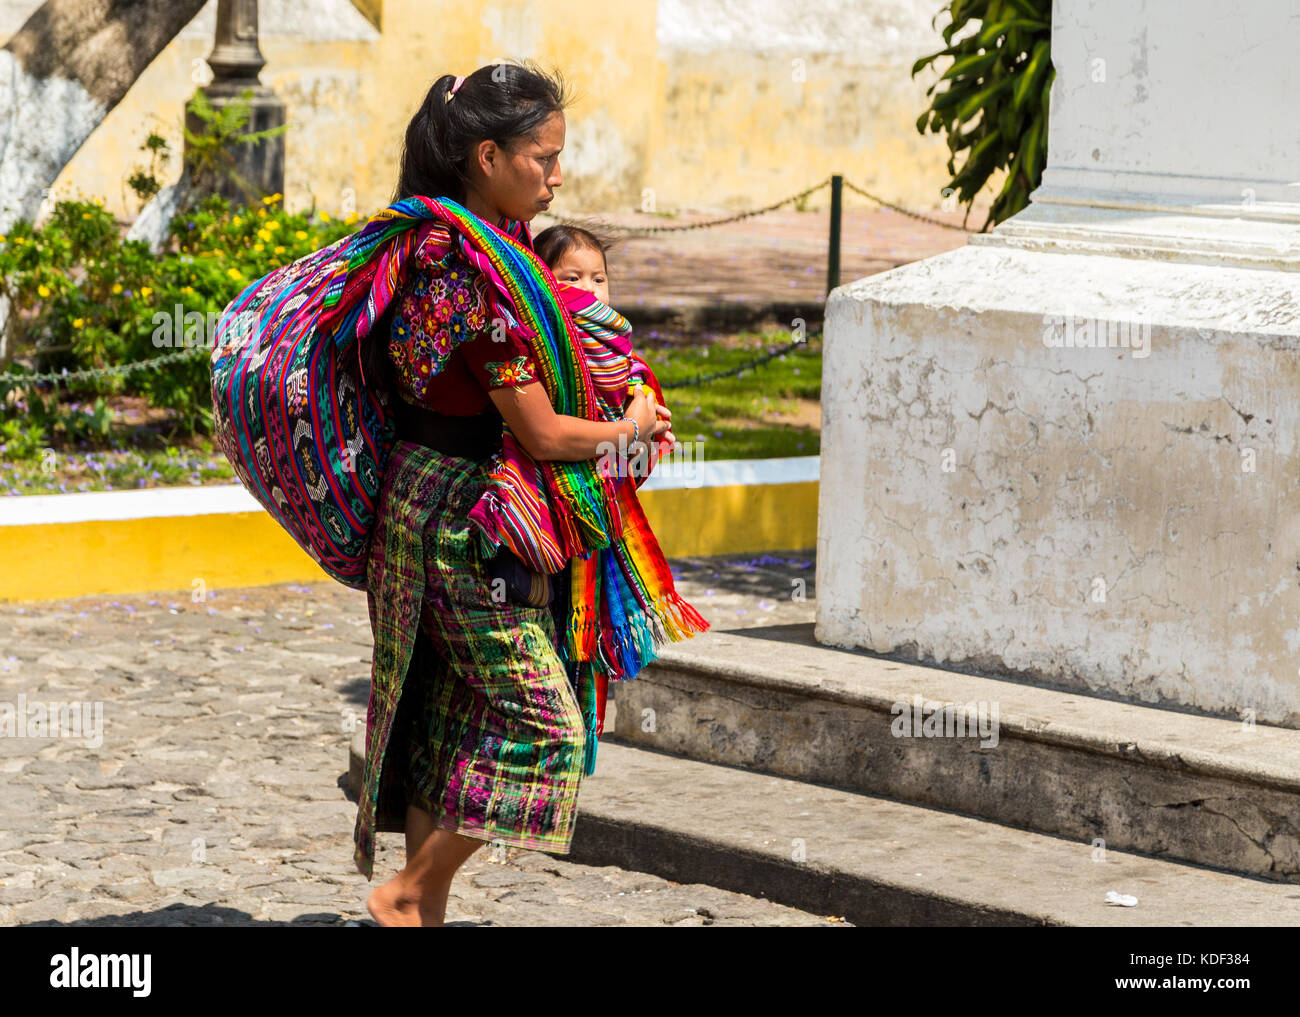 Mayan women with child, Antigua, Guatemala Stock Photo